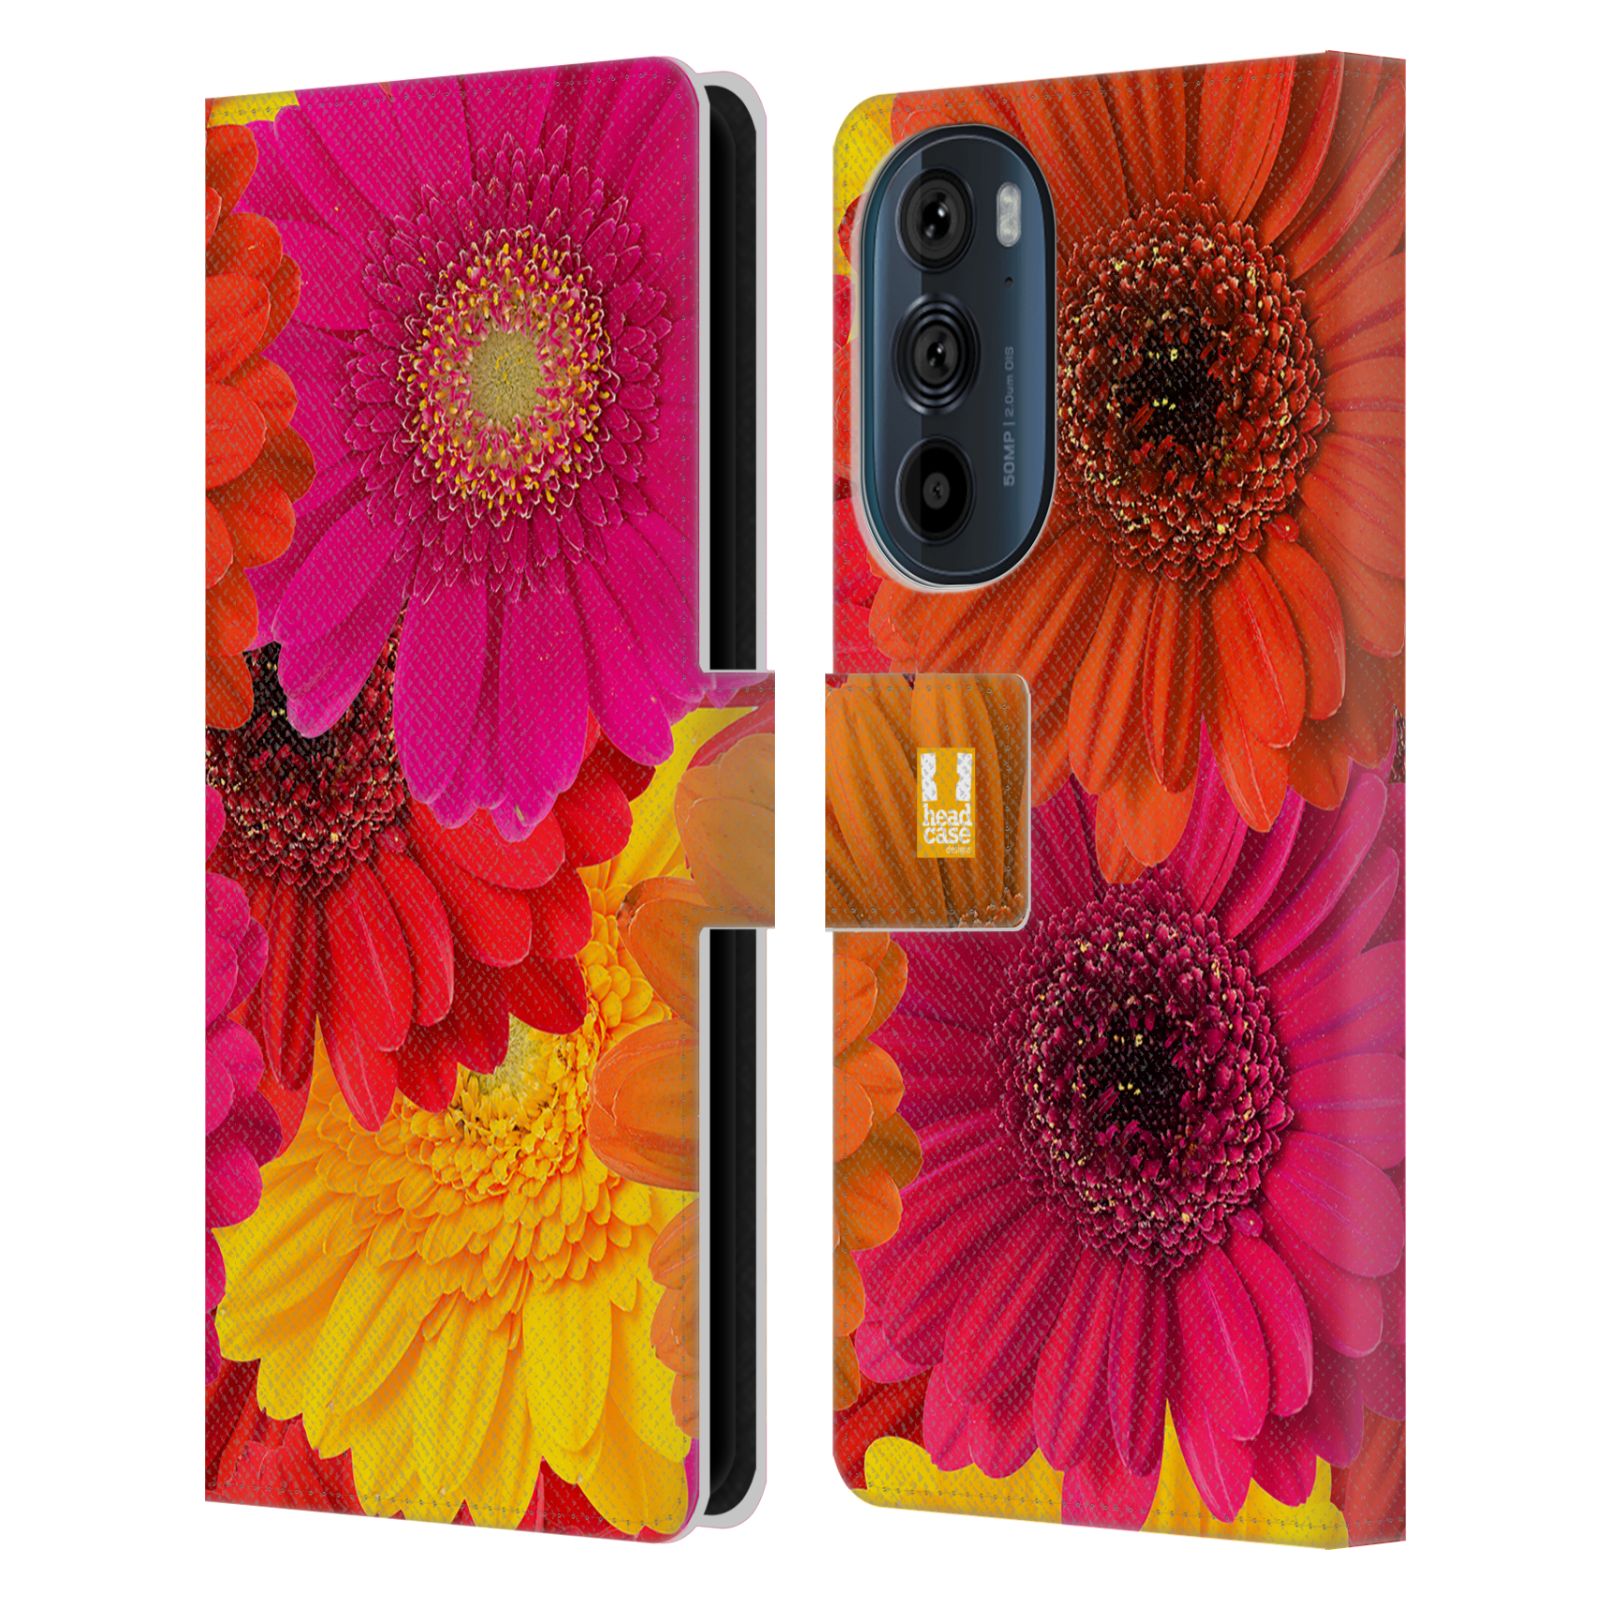 Pouzdro HEAD CASE na mobil Motorola EDGE 30 květy foto fialová, oranžová GERBERA